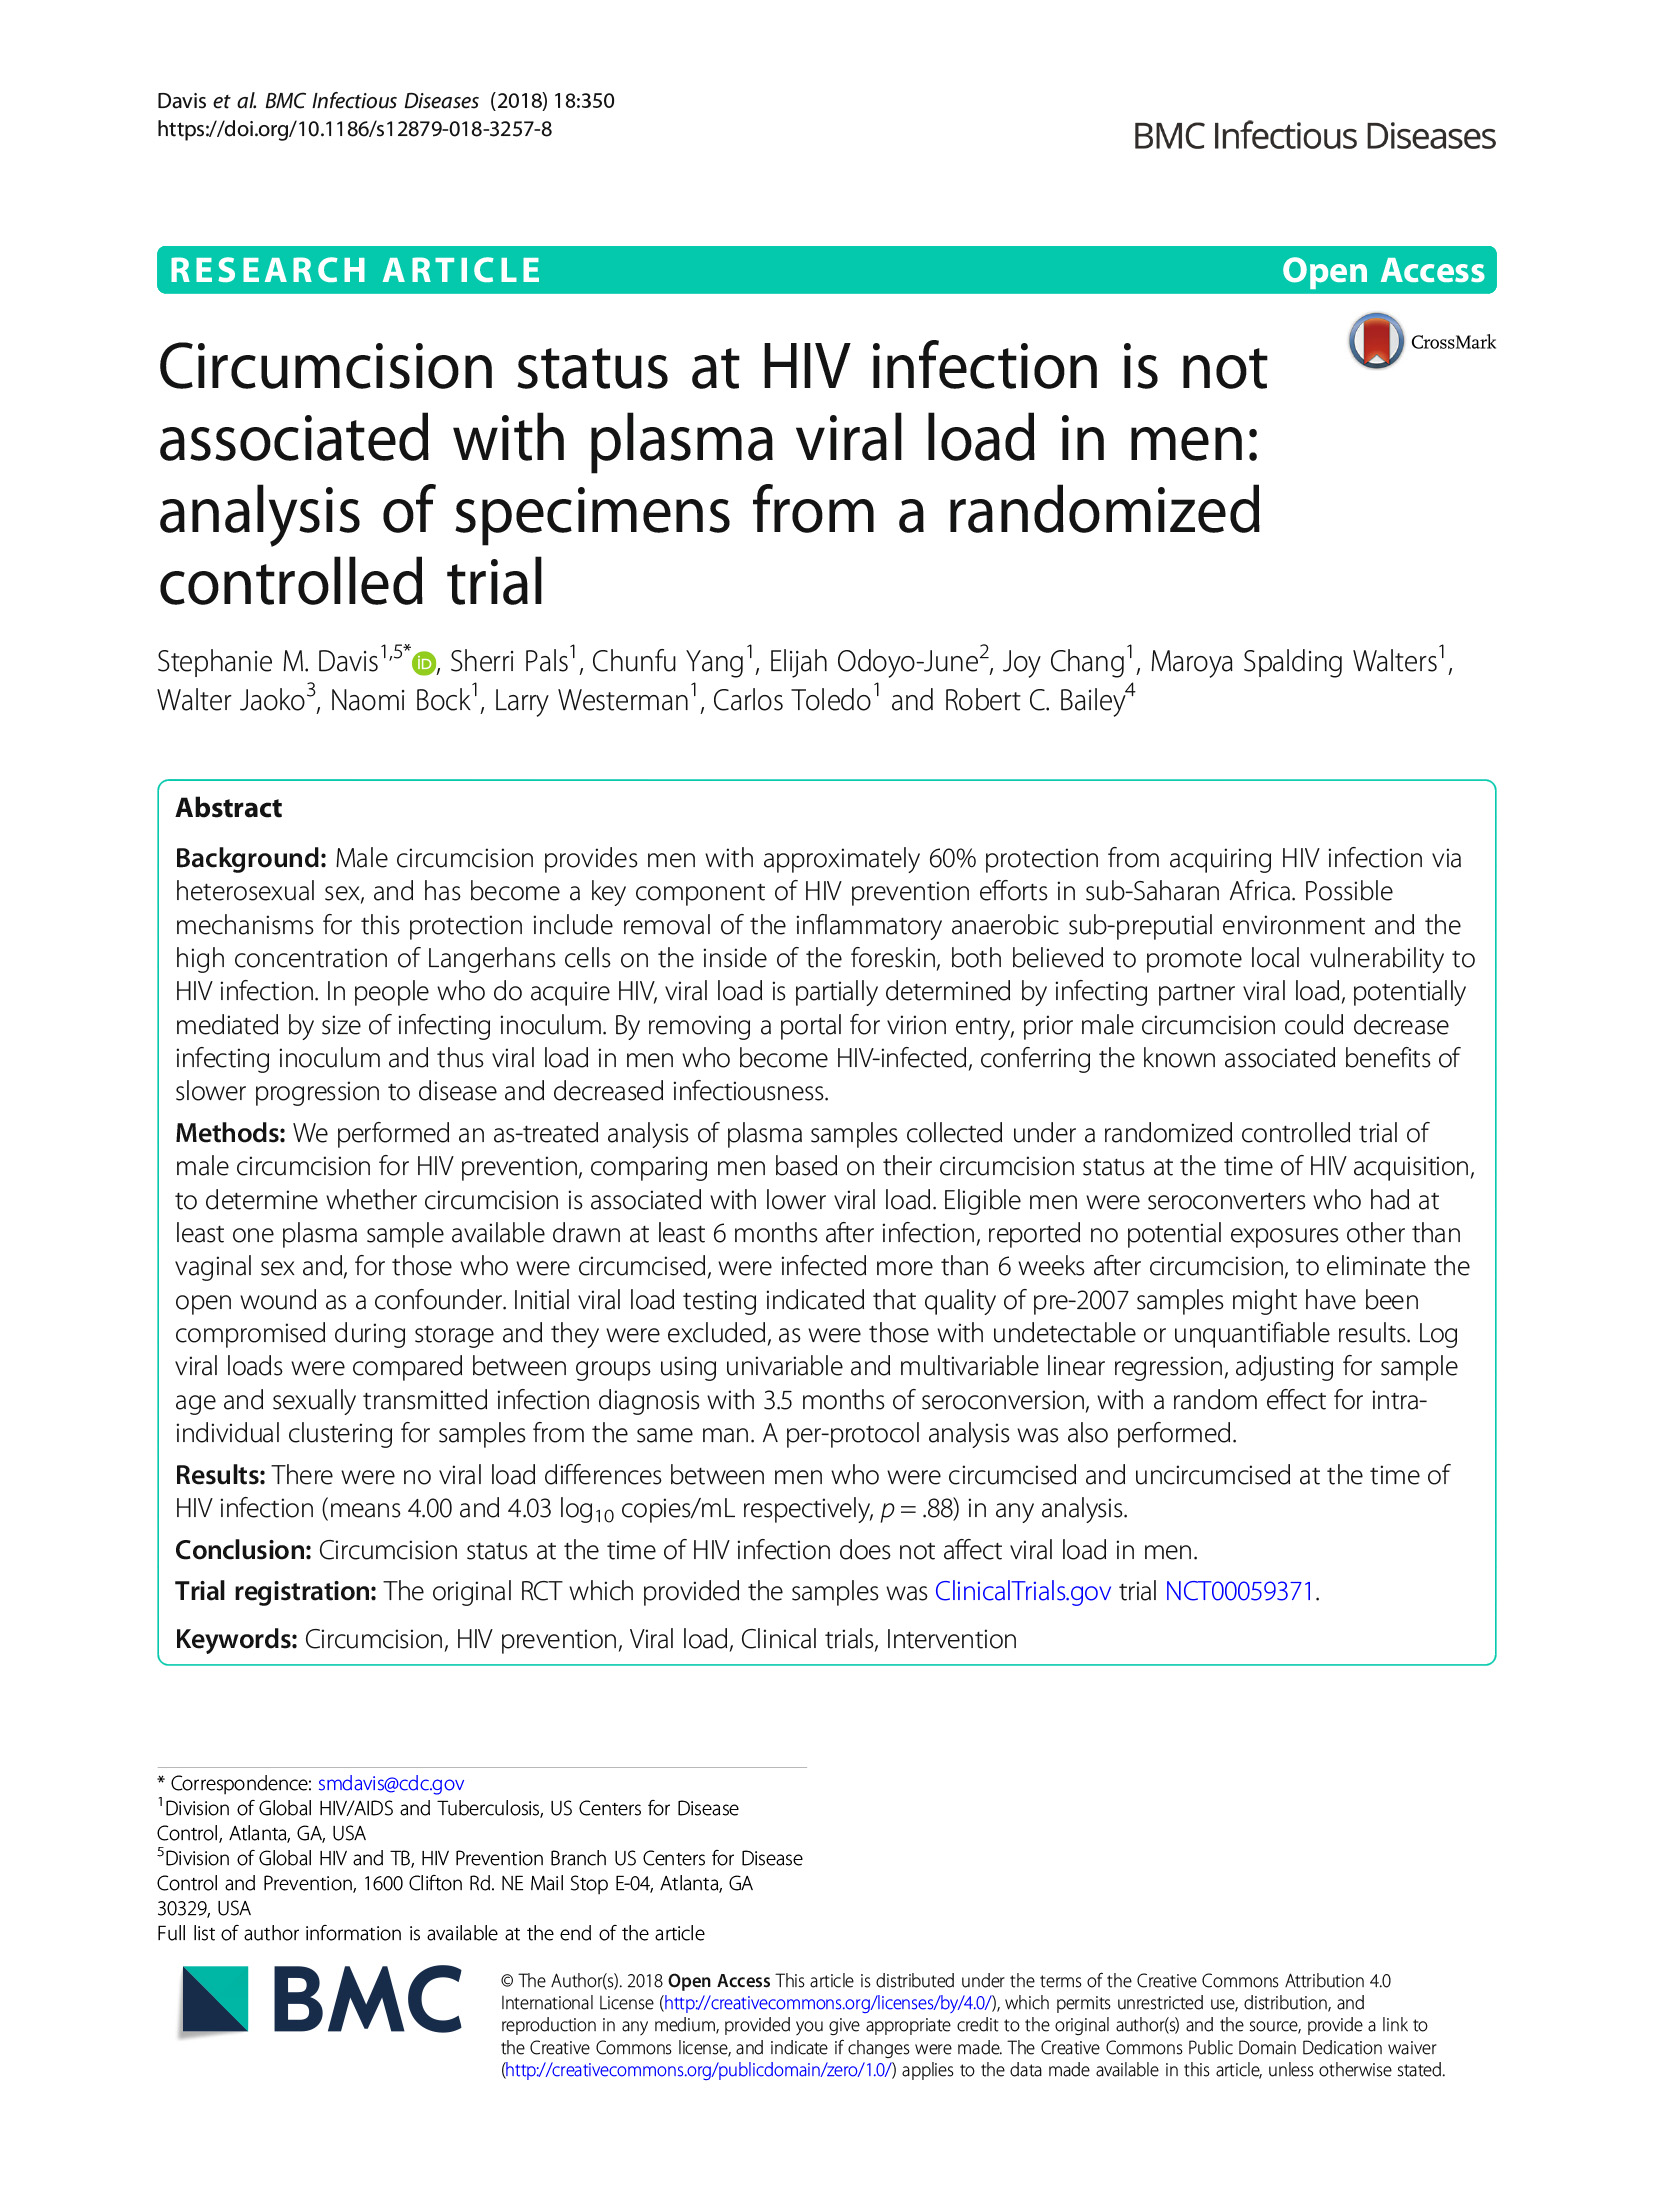 El estado de la circuncisión en el momento de la infección por VIH no está asociado con la carga viral plasmática en los hombres: Análisis de muestras de un ensayo controlado aleatorizado - portada